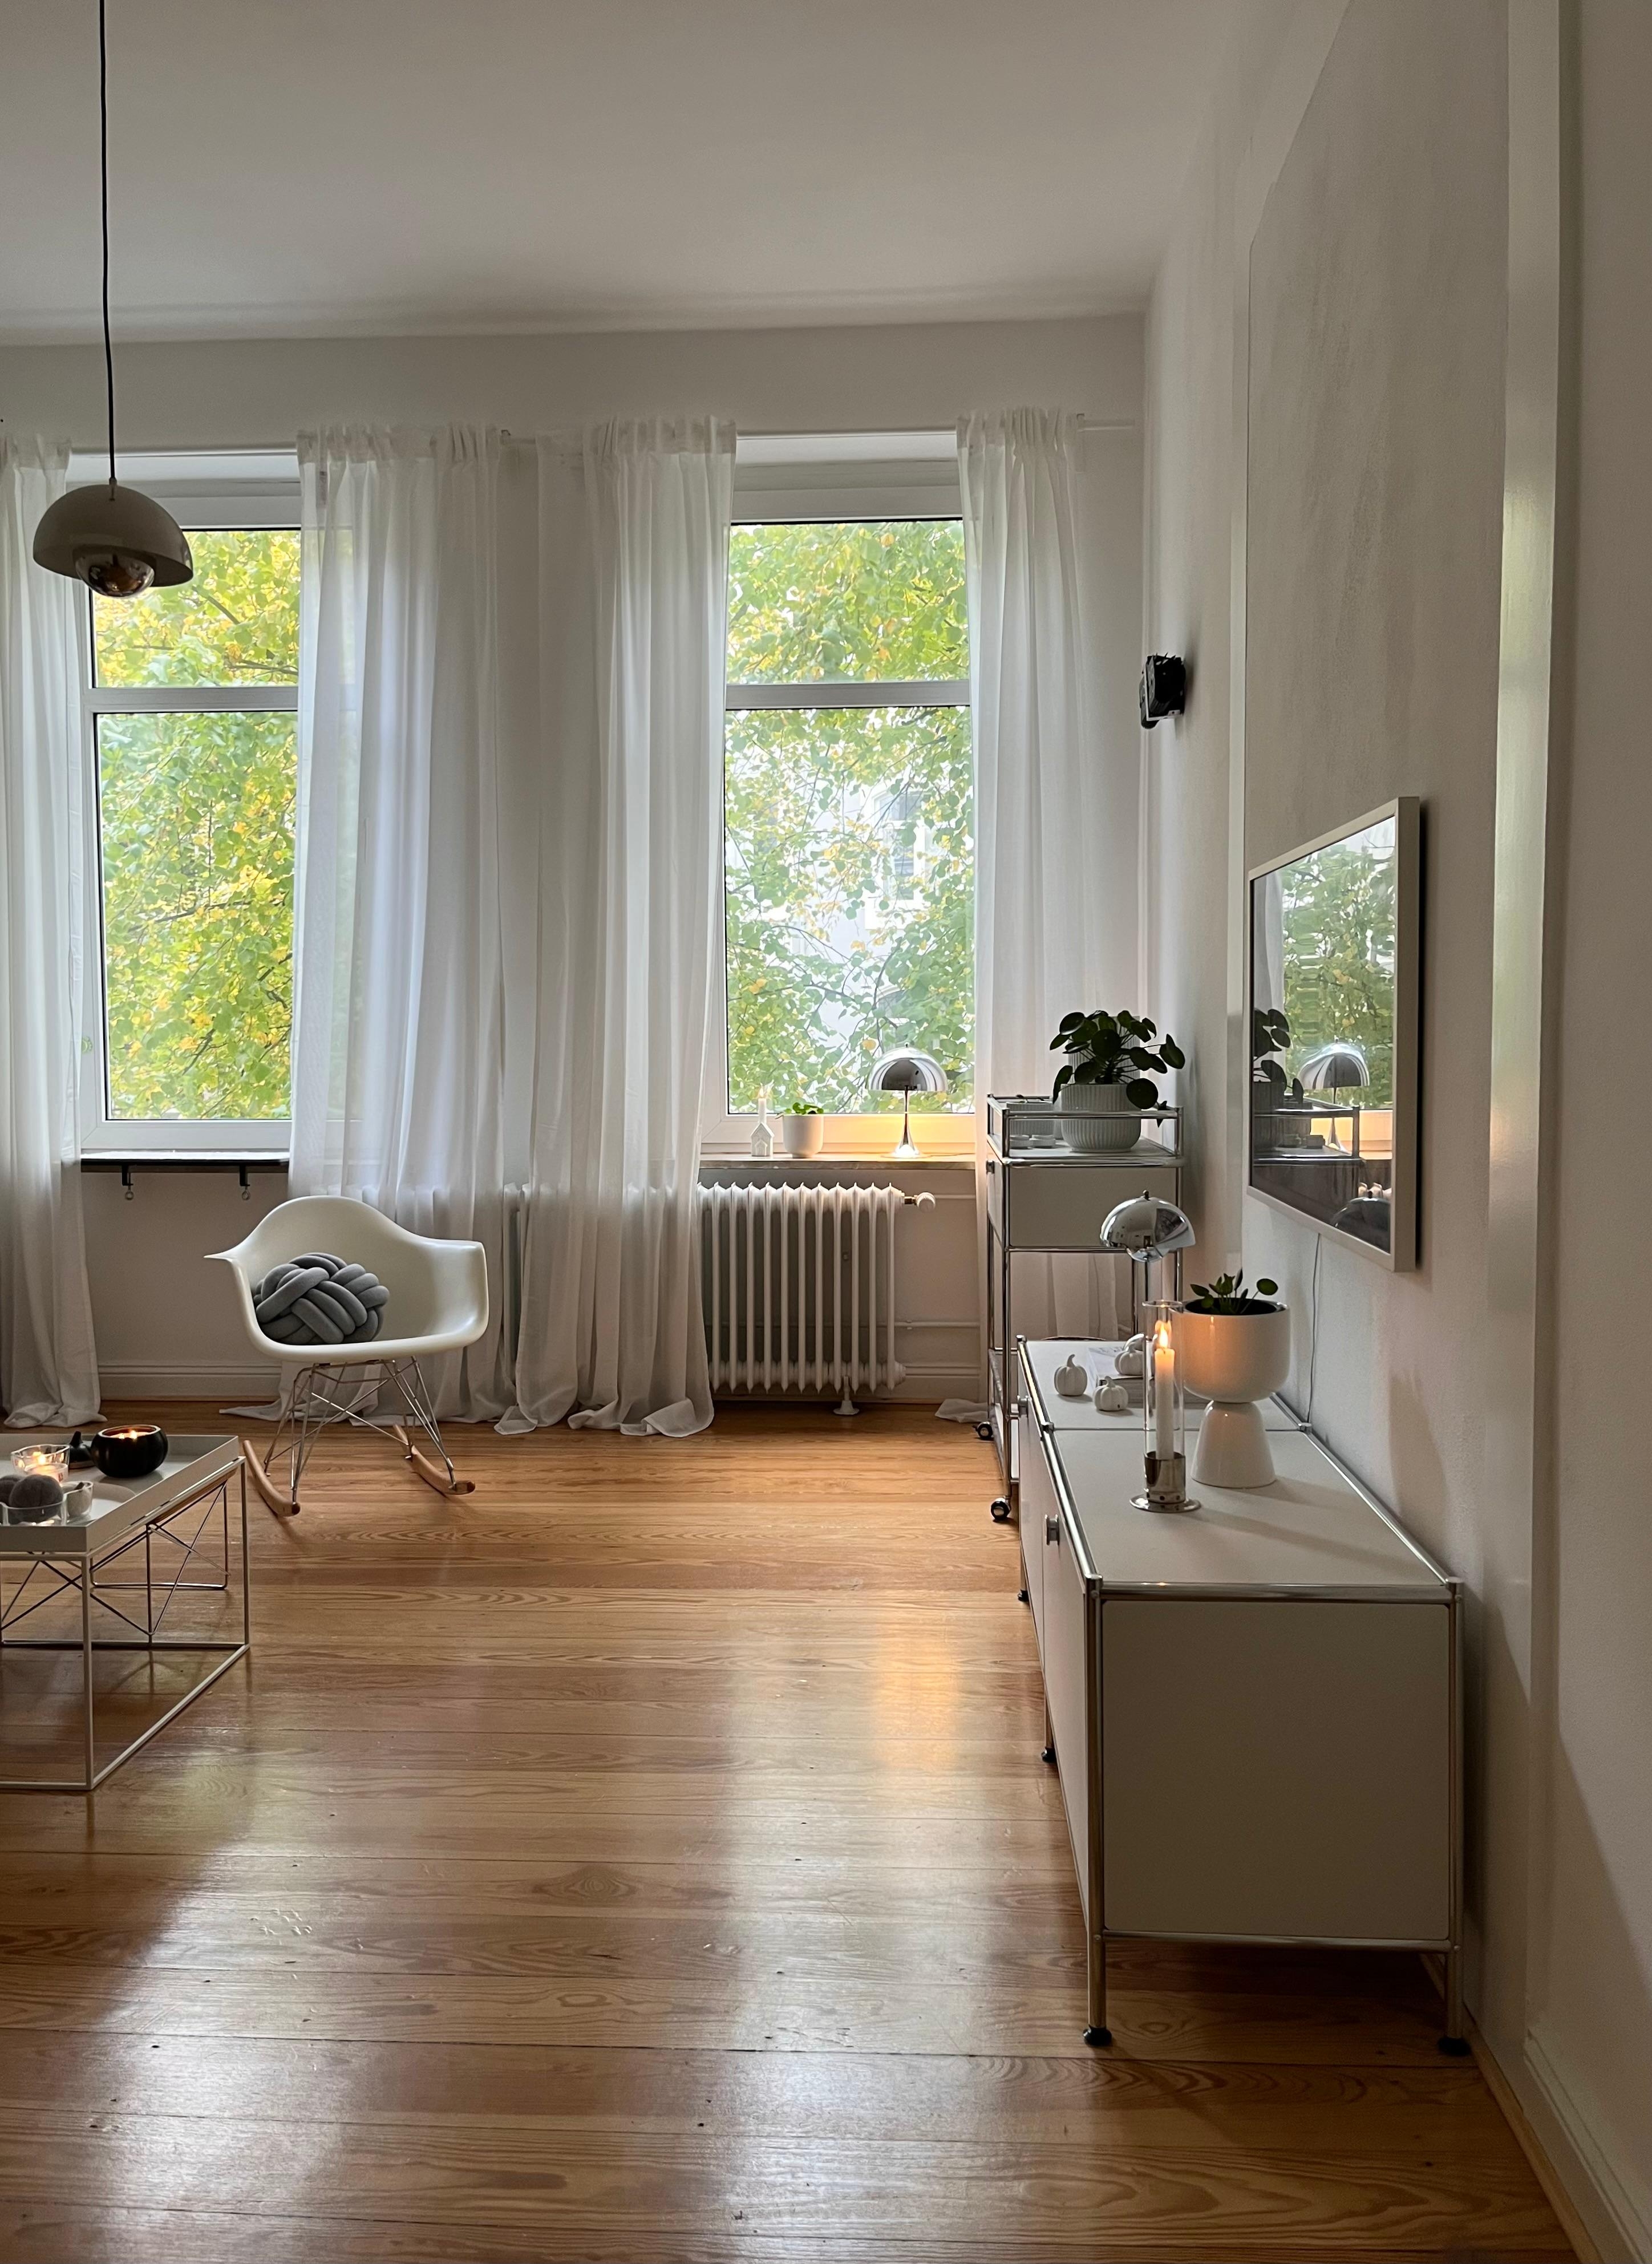 #wohnzimmer #hyggehome #skandinavischesdesign #designklassiker #leuchtenliebe